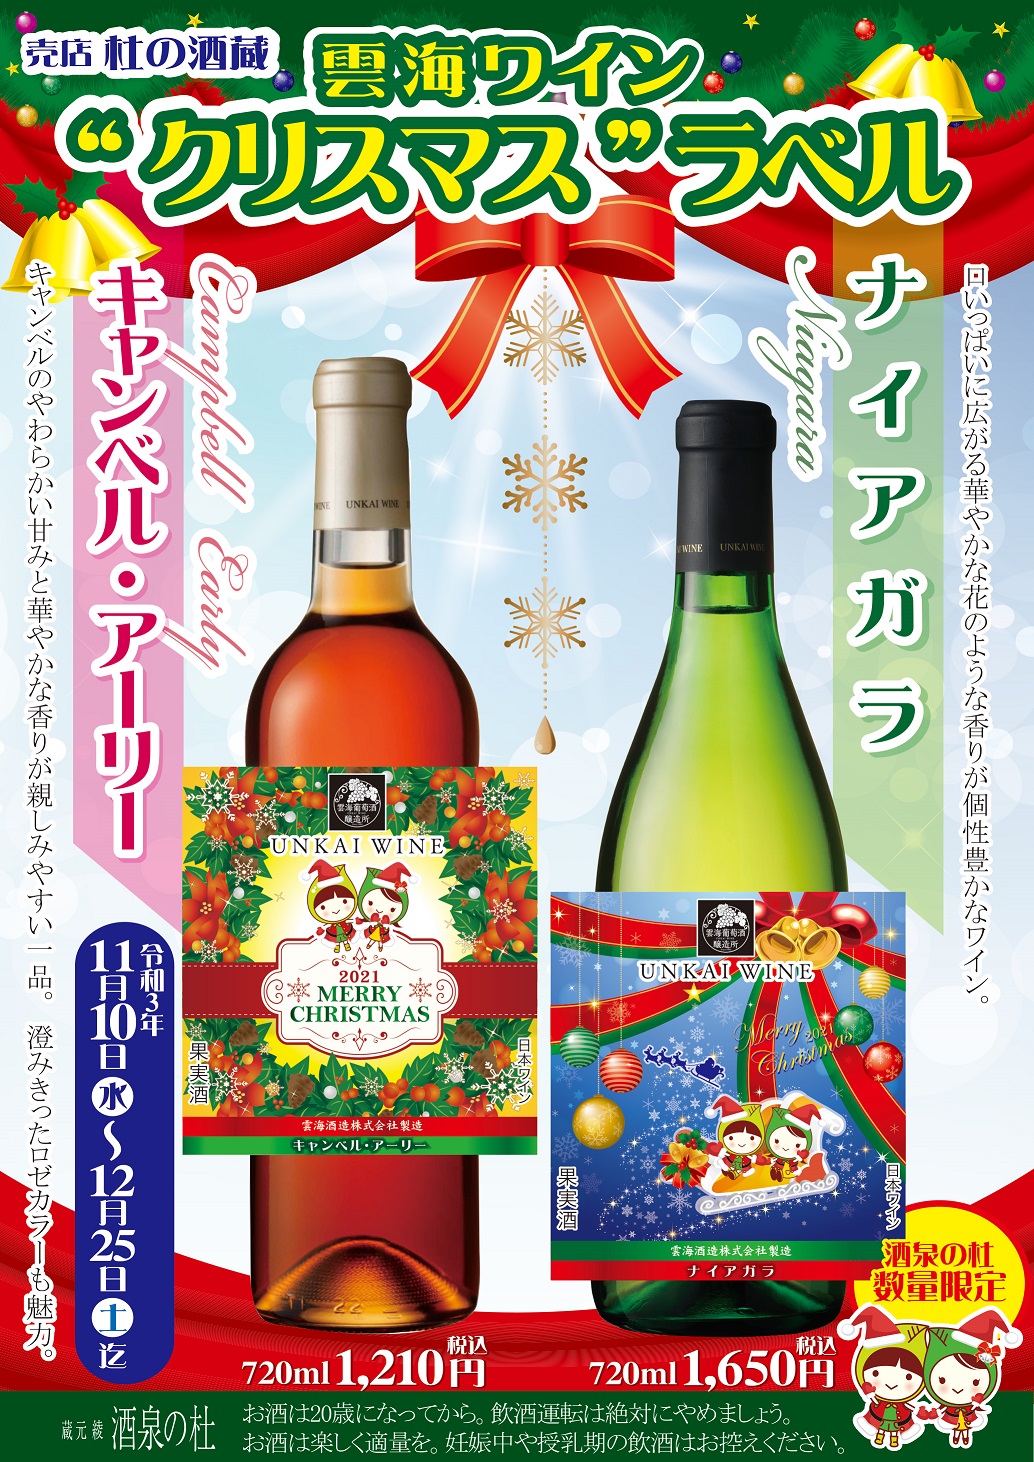 売店 杜の酒蔵『2021年雲海ワインクリスマスラベル』本日より発売!酒泉の杜、雲海酒造